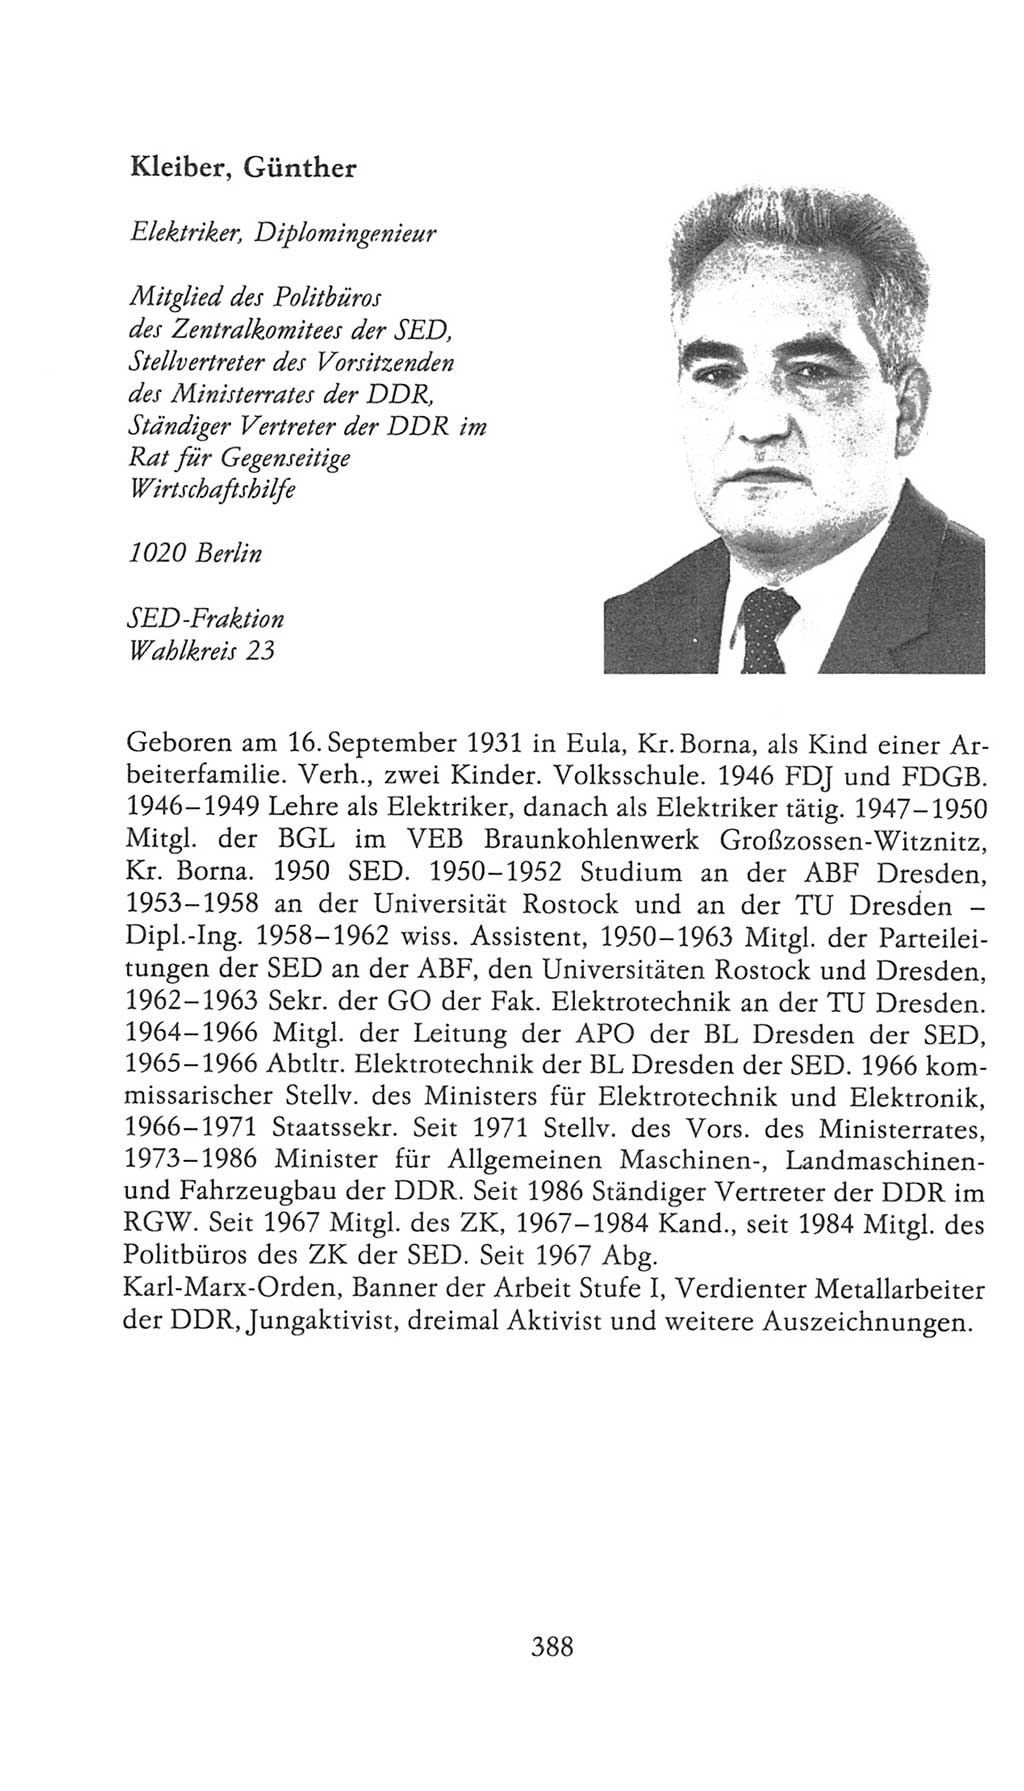 Volkskammer (VK) der Deutschen Demokratischen Republik (DDR), 9. Wahlperiode 1986-1990, Seite 388 (VK. DDR 9. WP. 1986-1990, S. 388)